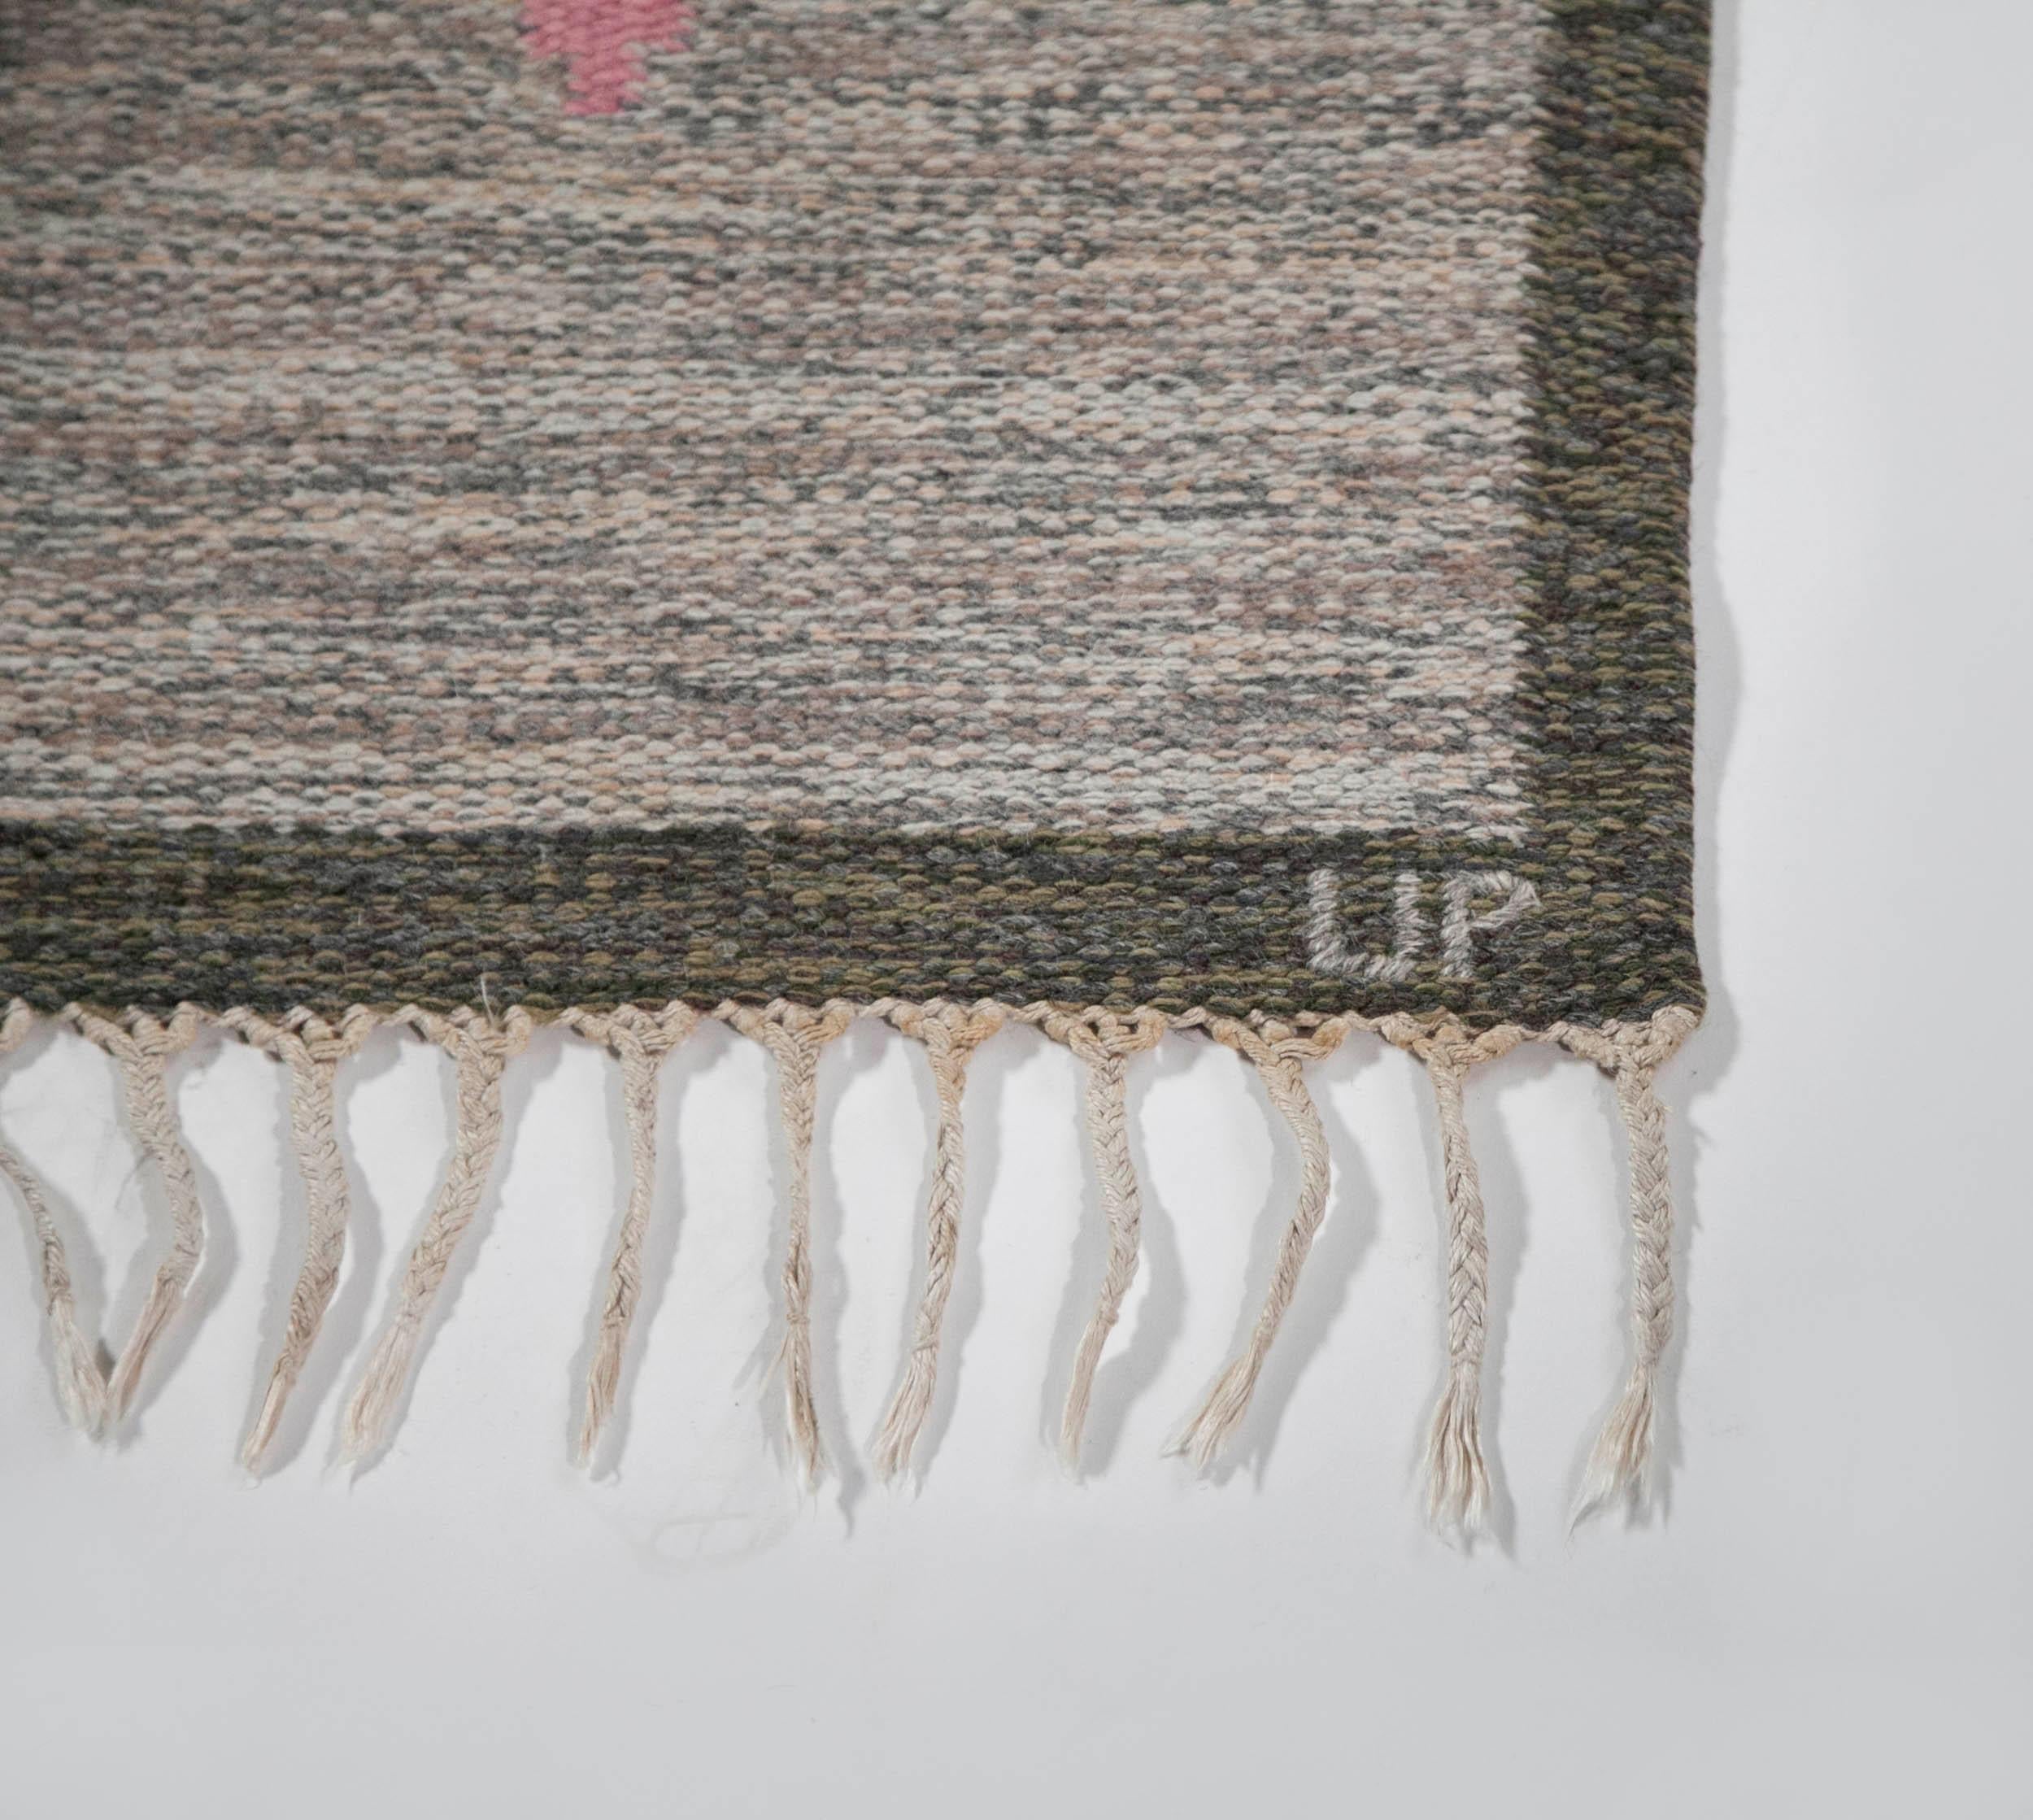 Wool Ulla Parkdah Swedish Flat-Weave Rug, Signed UP, Sweden, 1960s For Sale